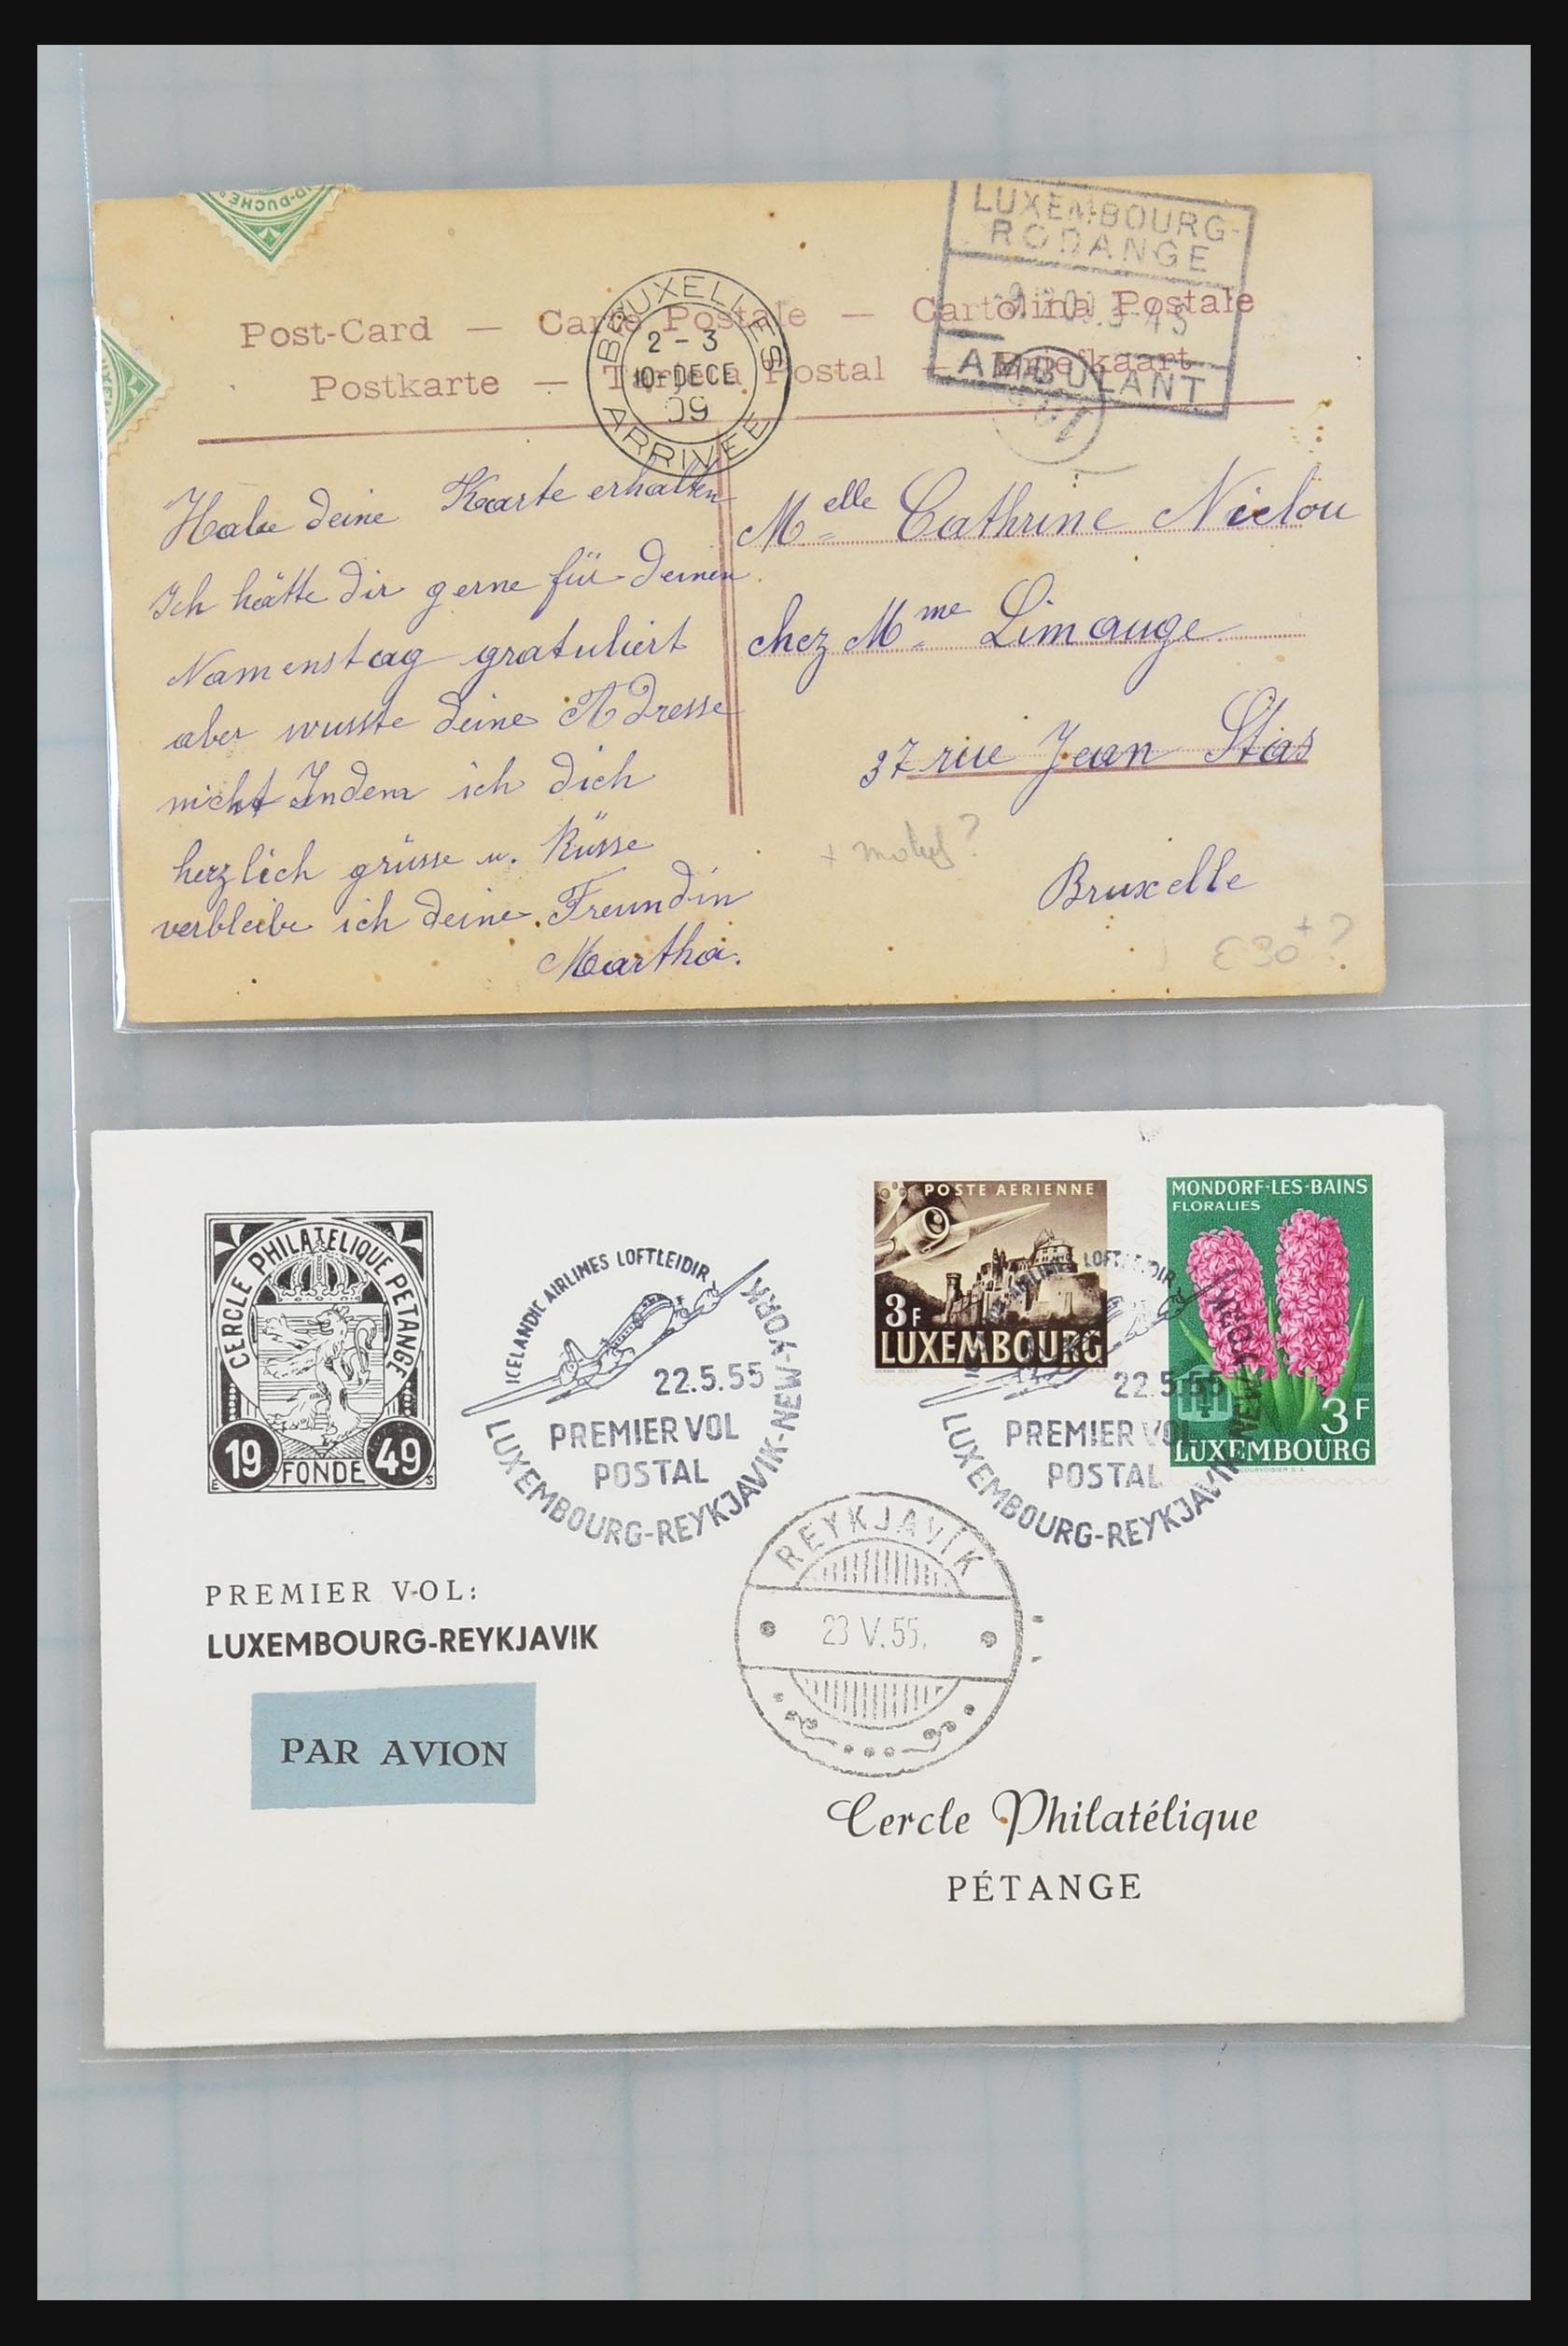 31358 181 - 31358 Portugal/Luxemburg/Griekenland brieven 1880-1960.